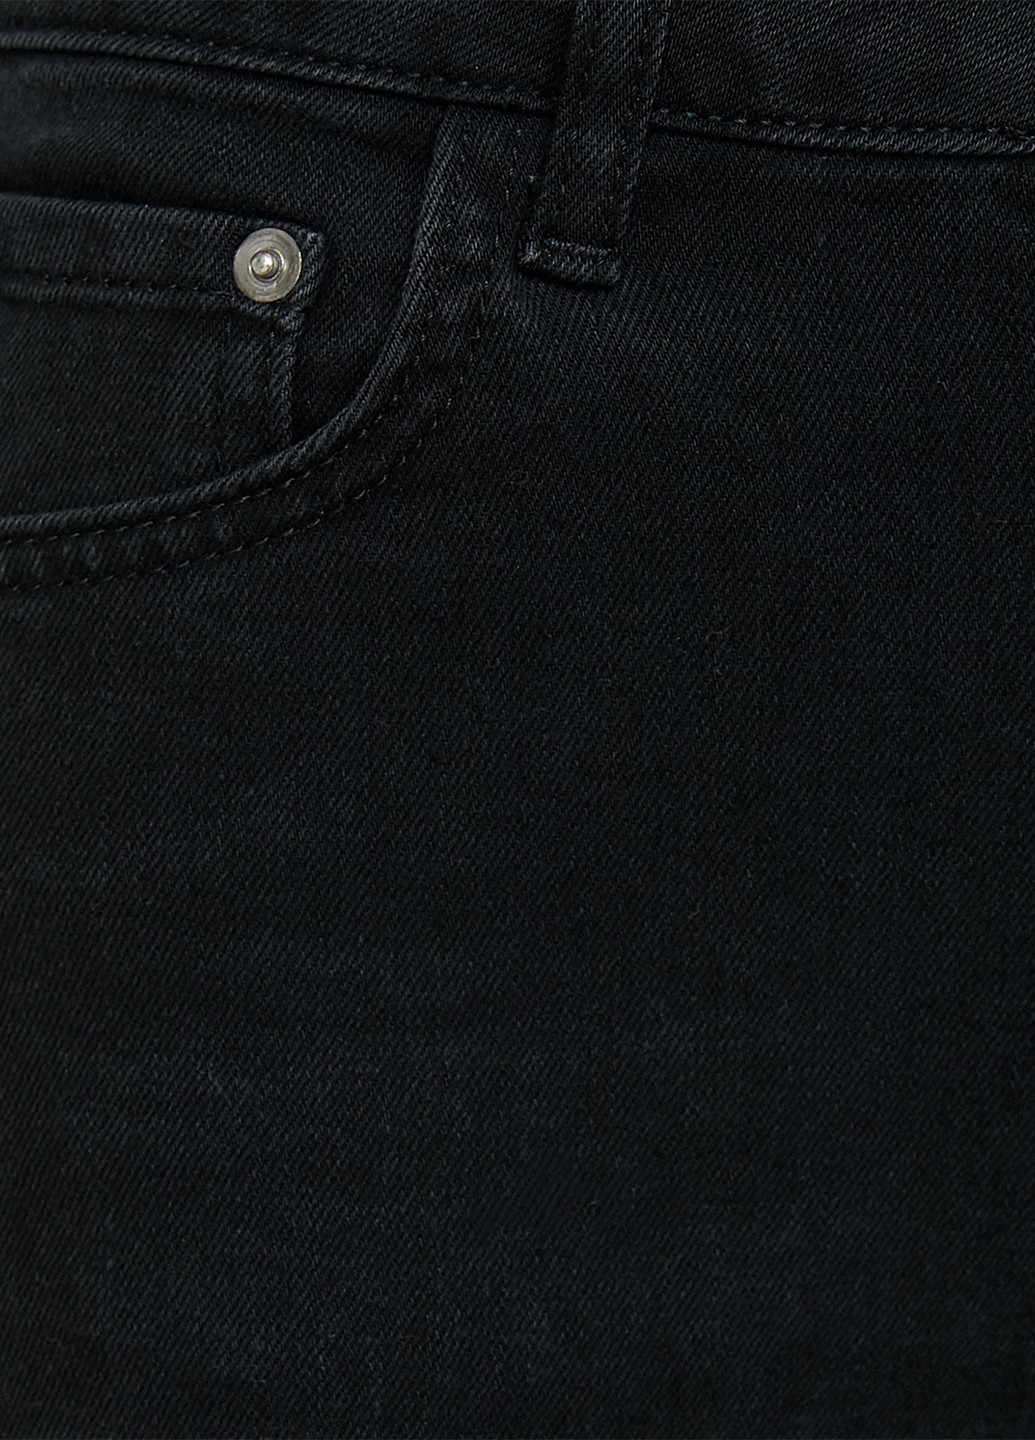 Черные демисезонные укороченные, буткат фит джинсы KOTON